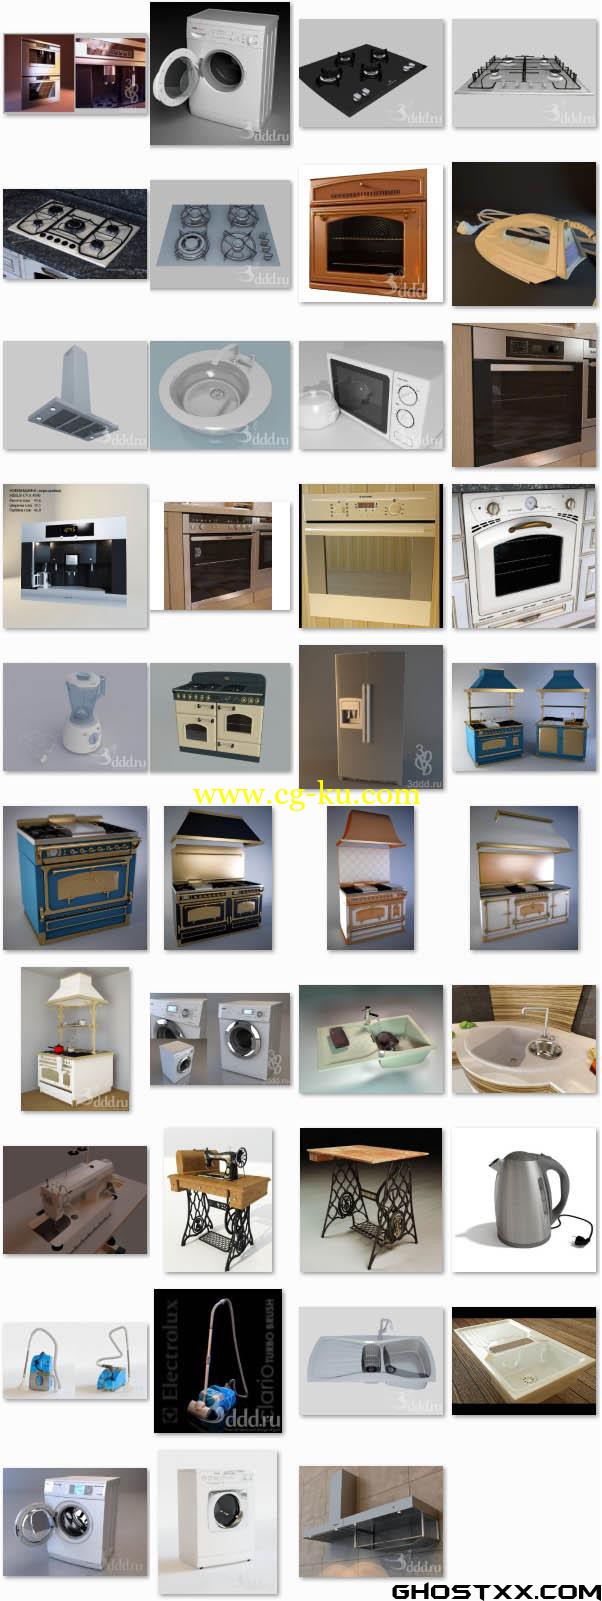 3DDD Household appliances的图片1